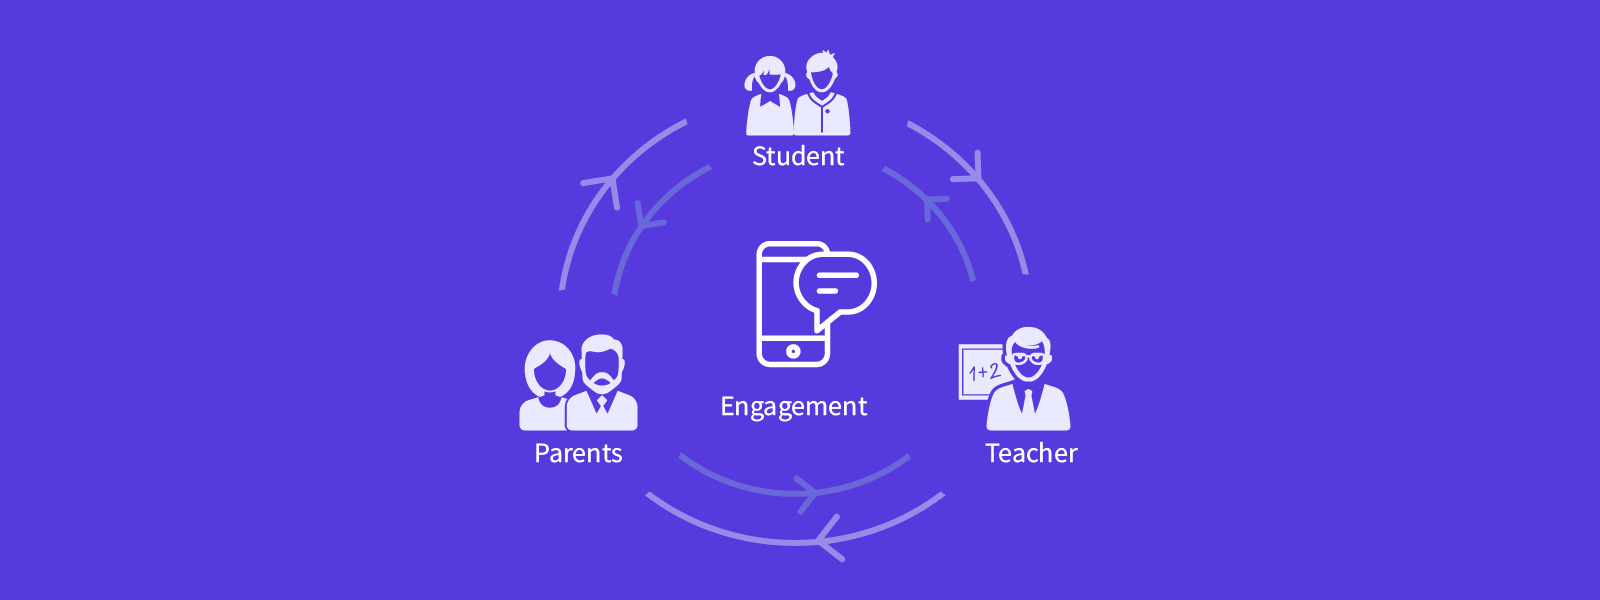 Engagement-parents-teacher-students